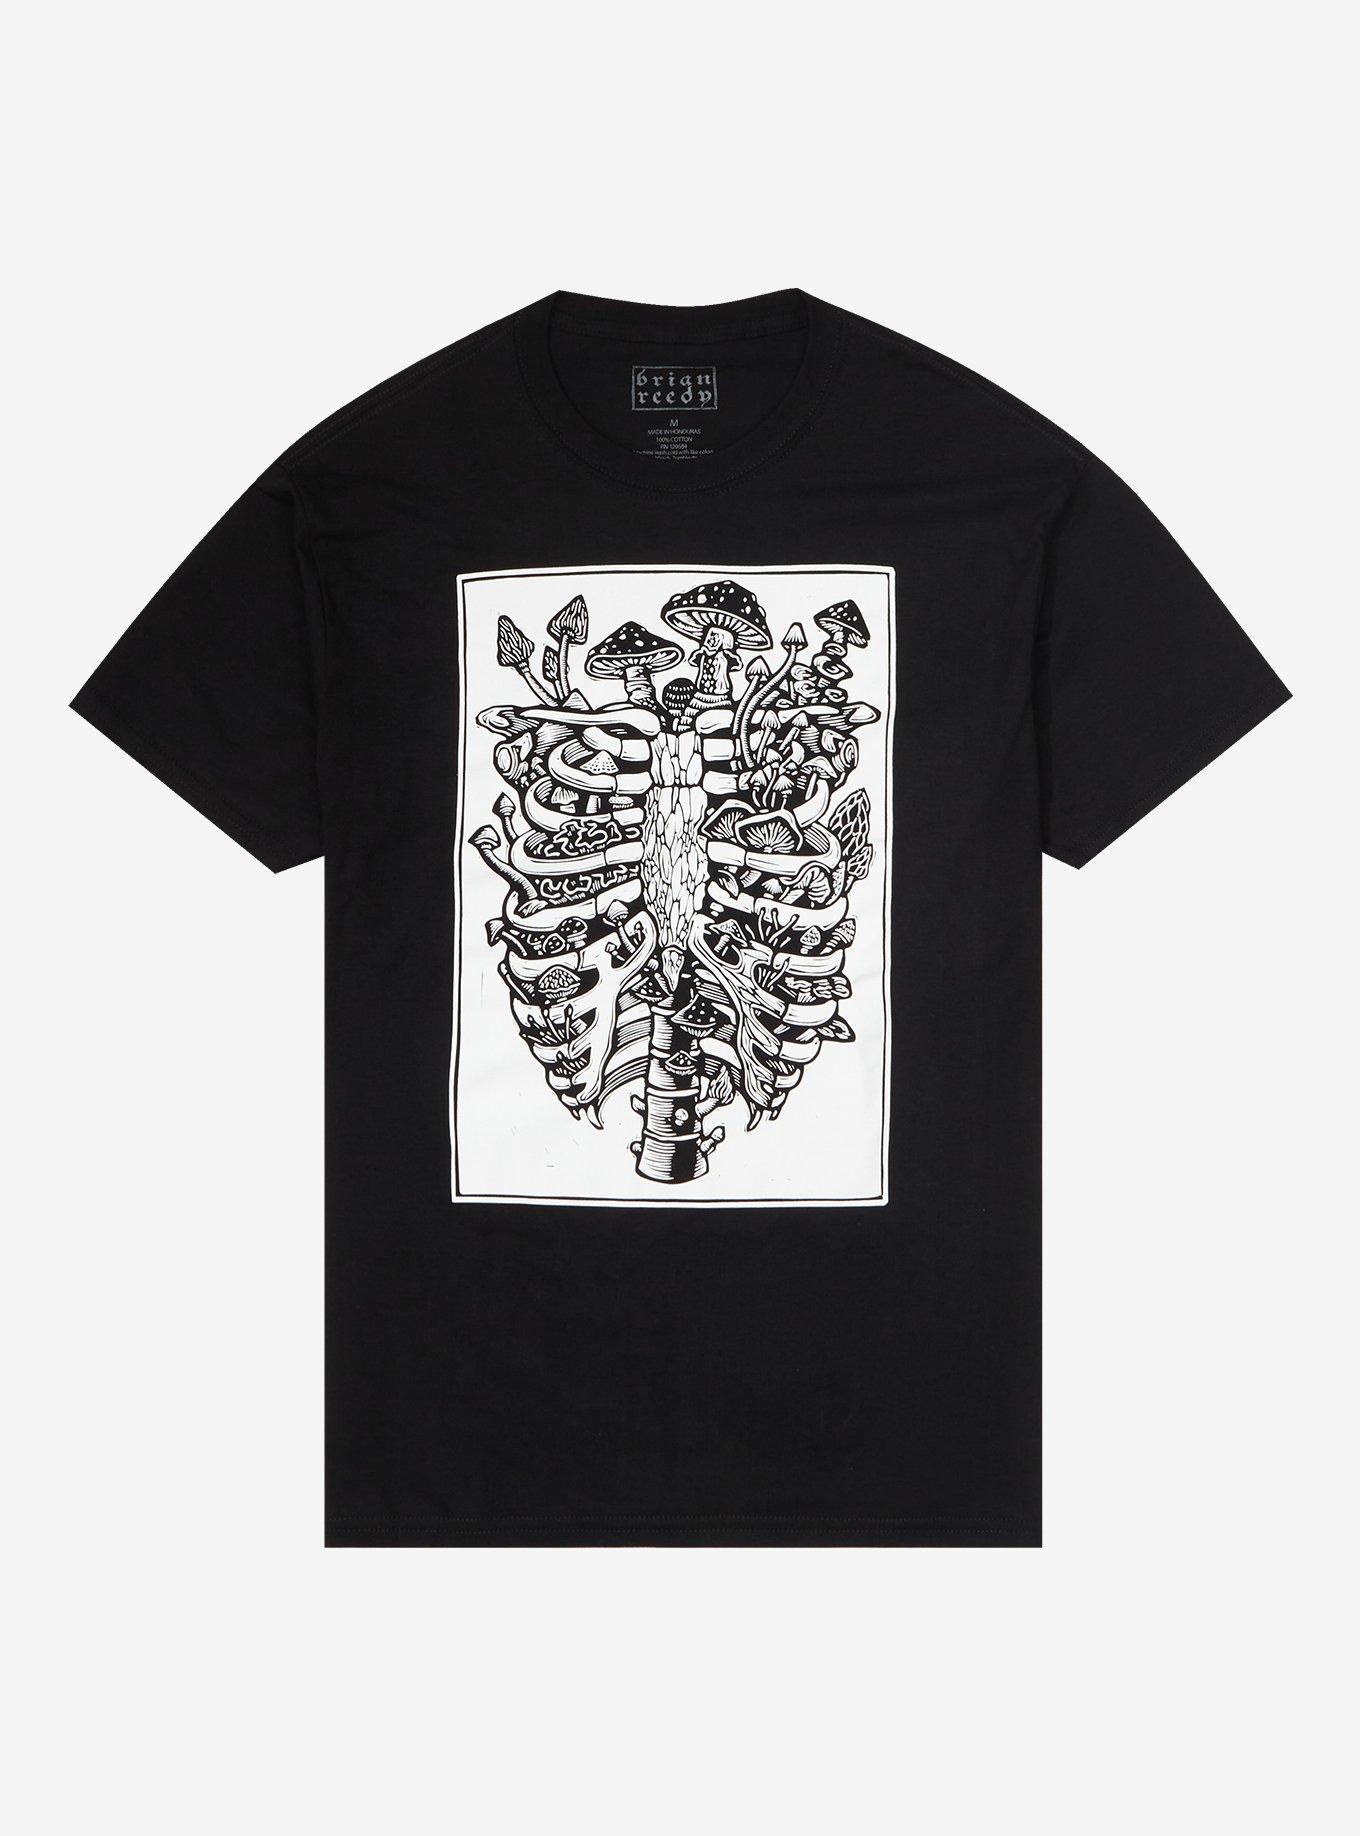 Mushroom Rib Cage T-Shirt By Brian Reedy, BLACK, hi-res